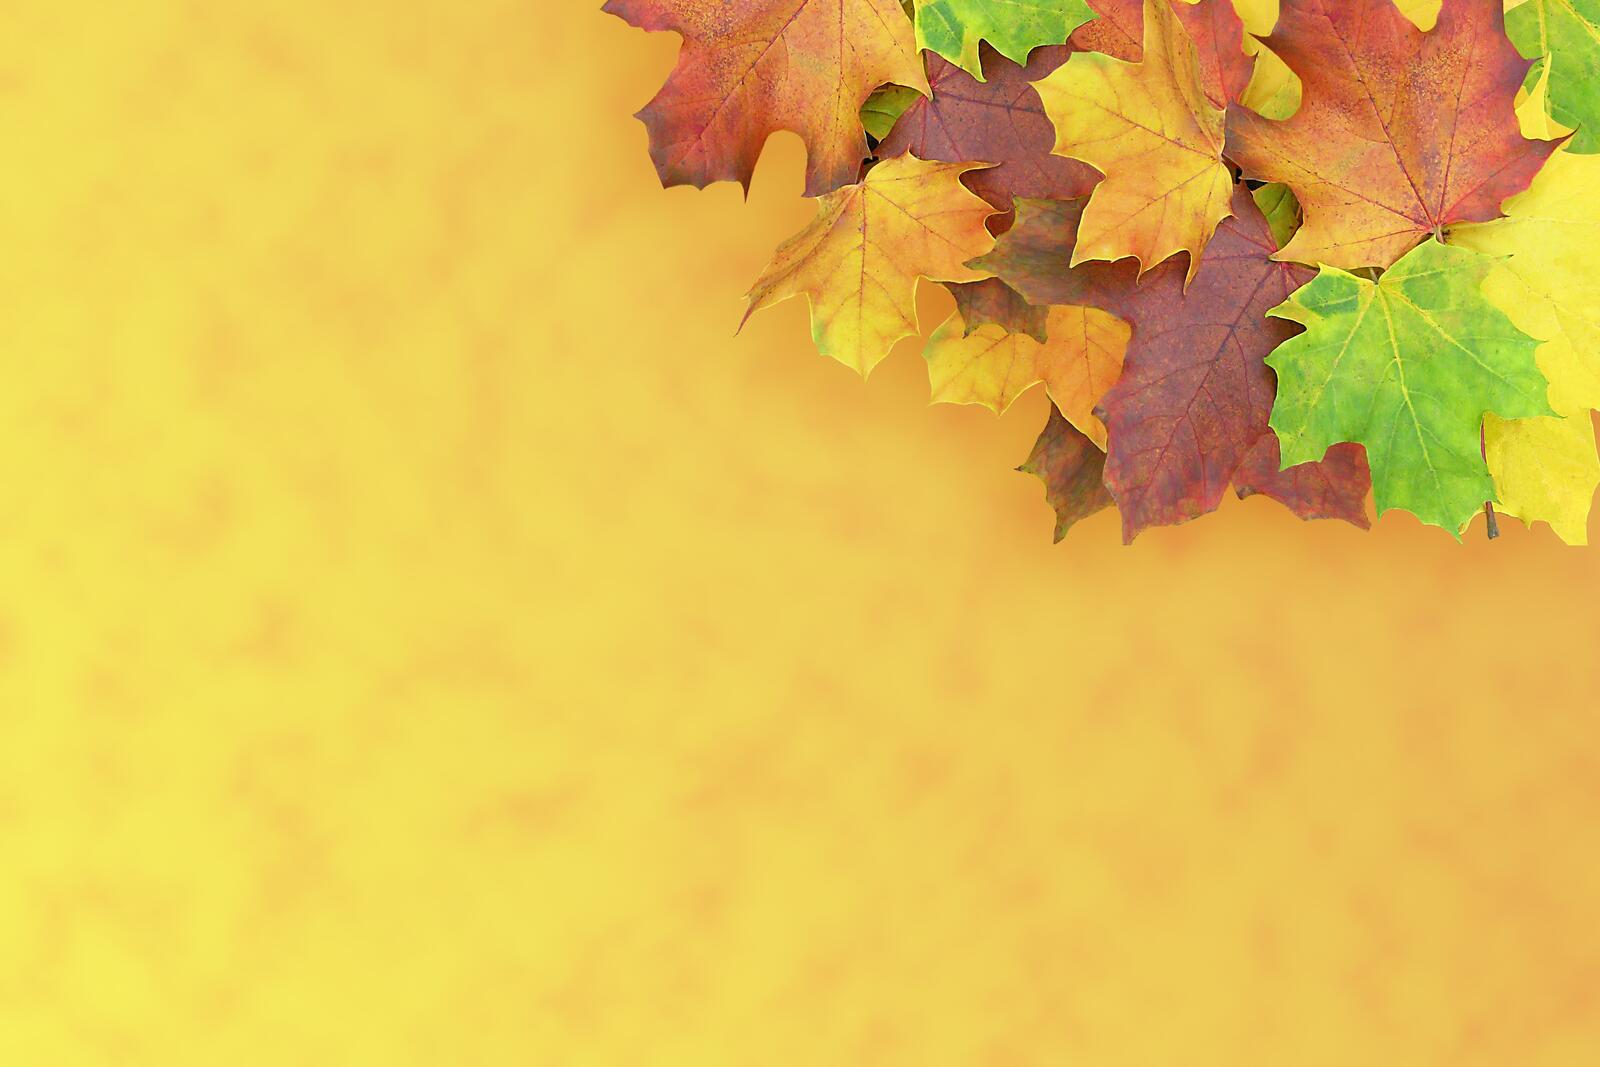 Бесплатное фото Осенний желто-оранжевый фон с кленовыми листьями